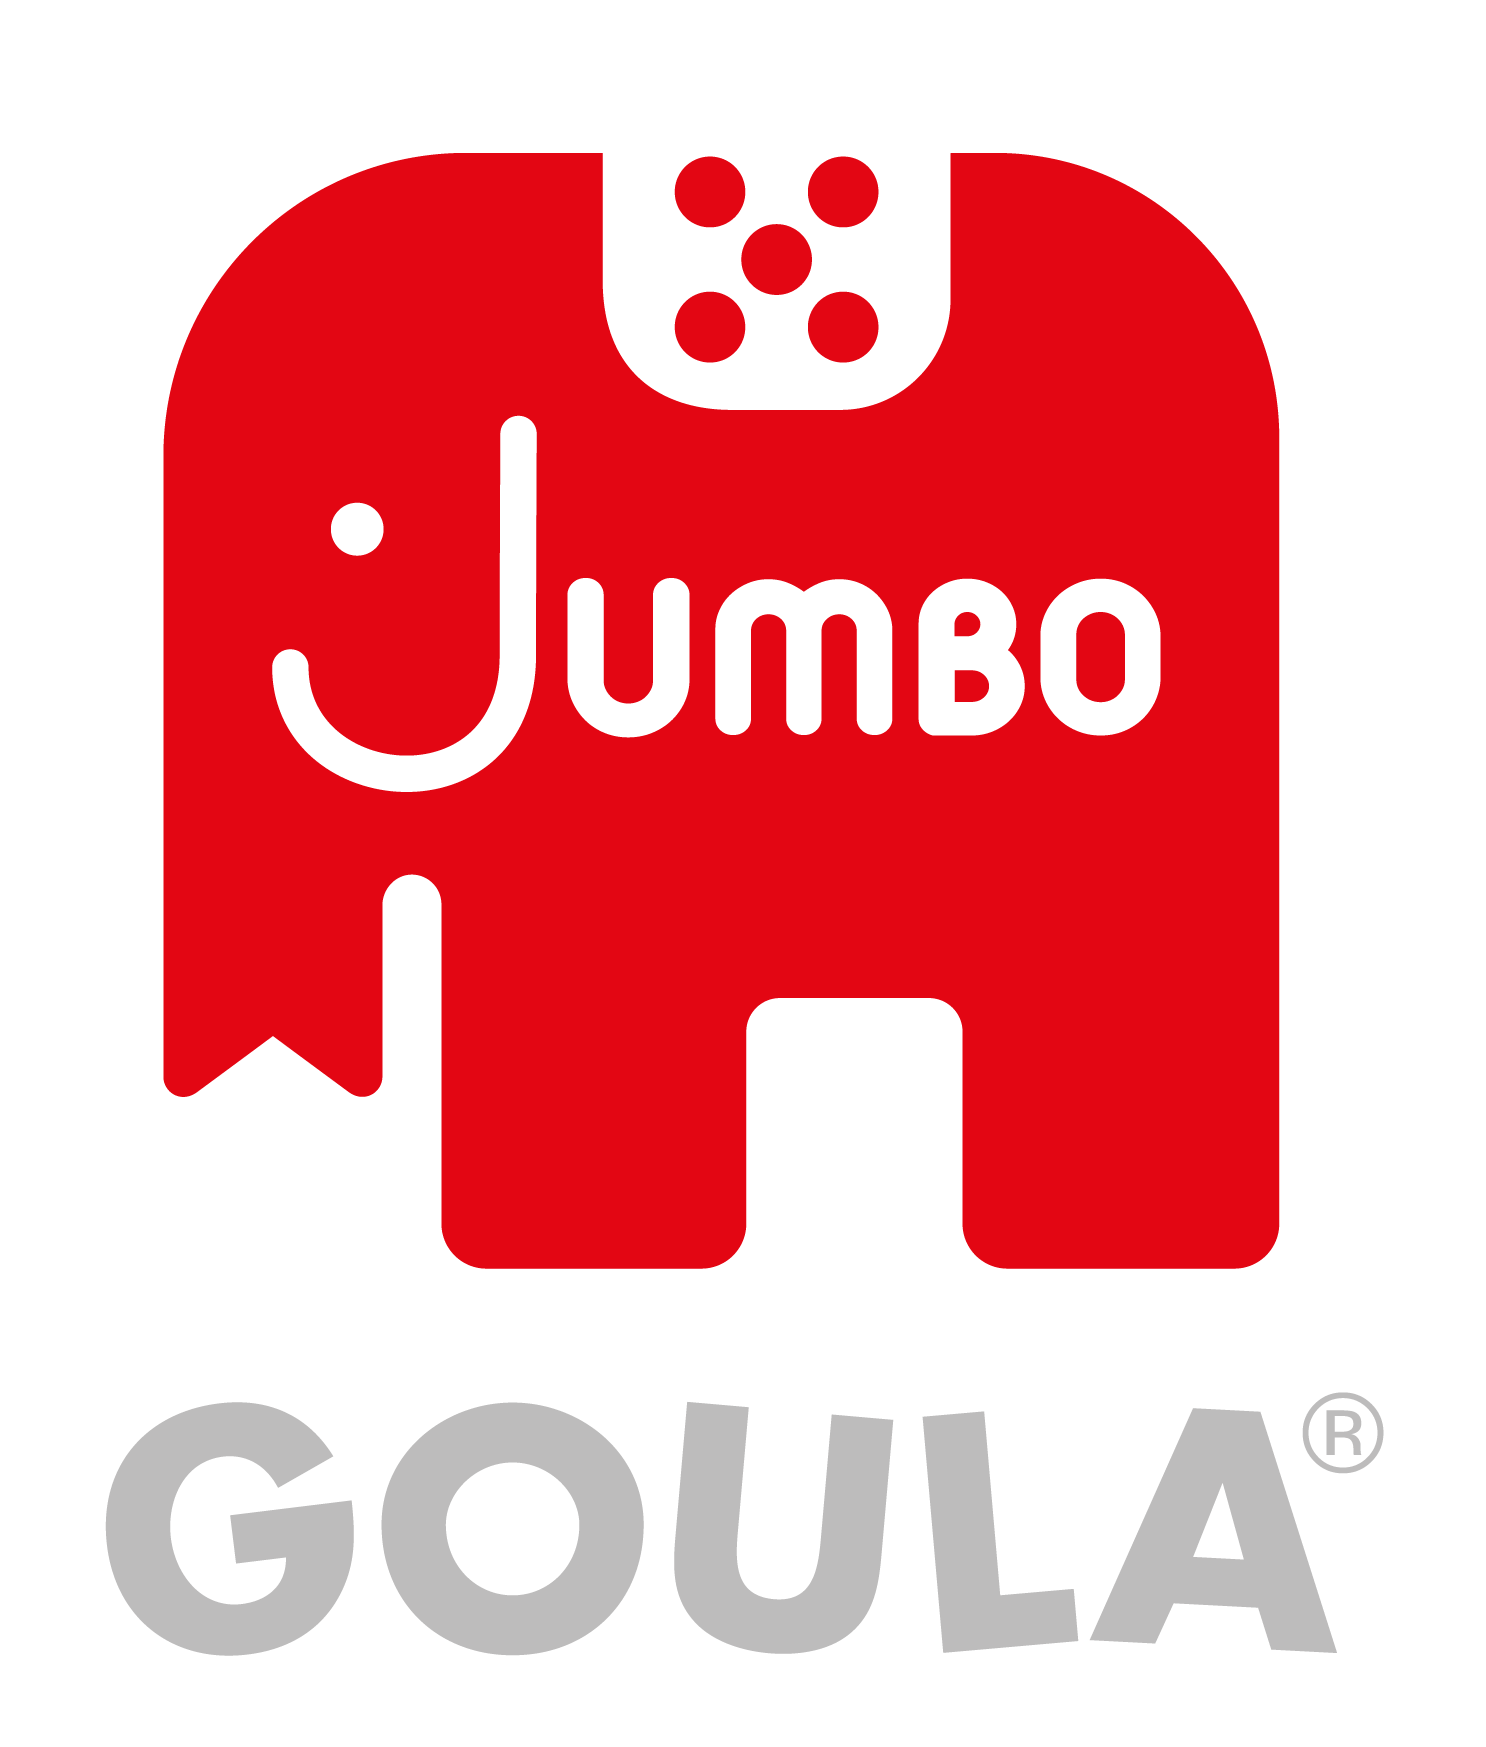 Jumbo_GOULA_logo